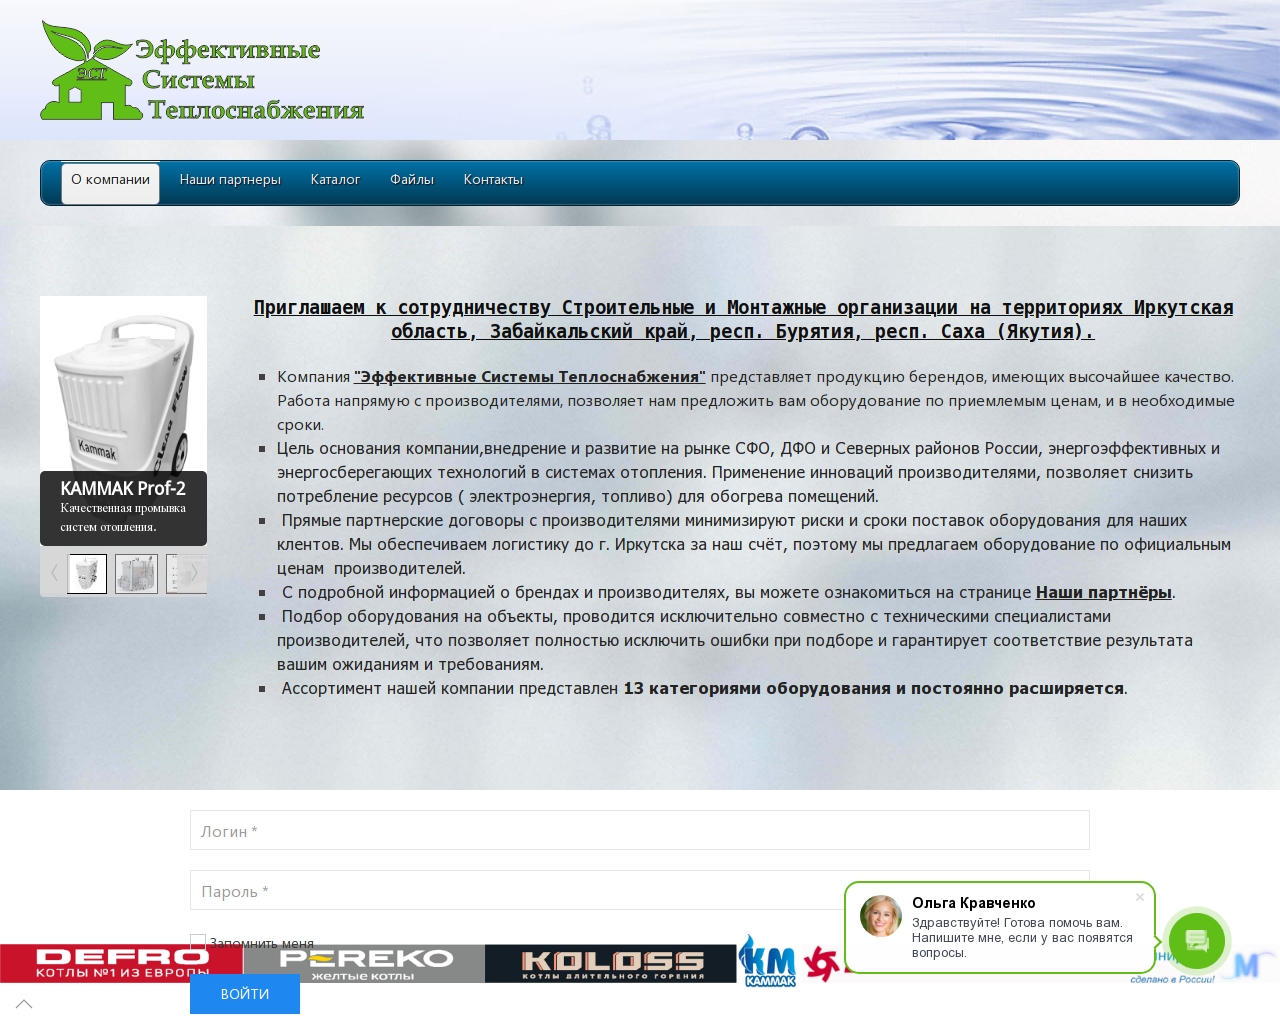 Изображение сайта est38.ru в разрешении 1280x1024